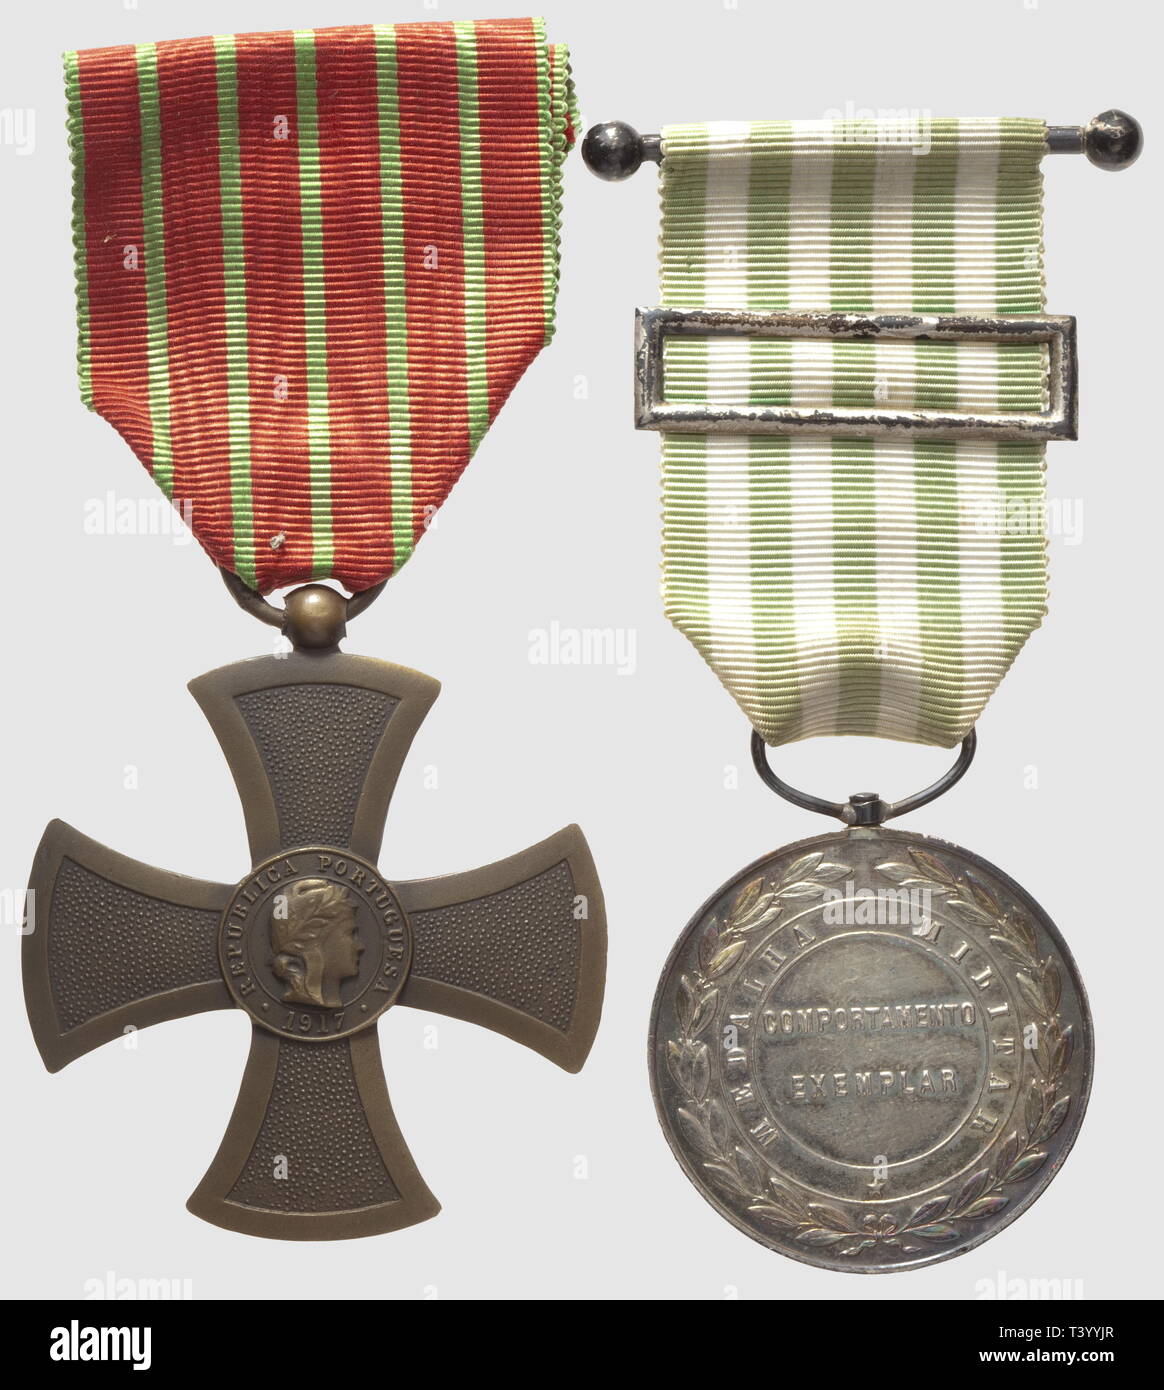 Médaille militaire, 1910, en argent. Sul giunto une Croix de guerre 1917, Additional-Rights-Clearance-Info-Not-Available Foto Stock